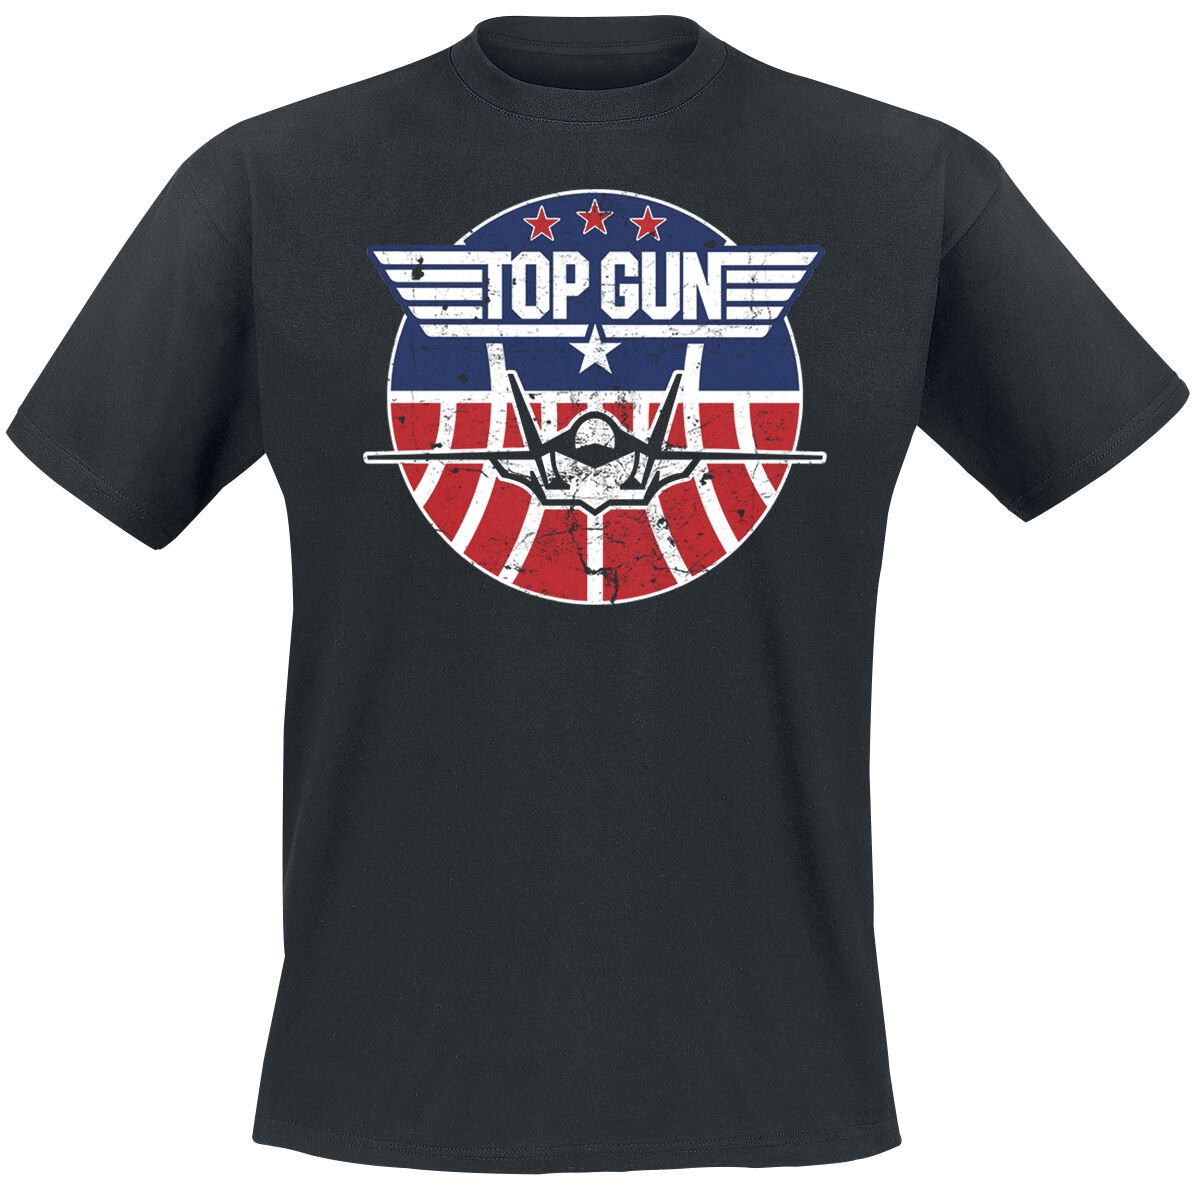 Image of T-Shirt di Top Gun - Maverick - Tomcat - S a 4XL - Uomo - nero